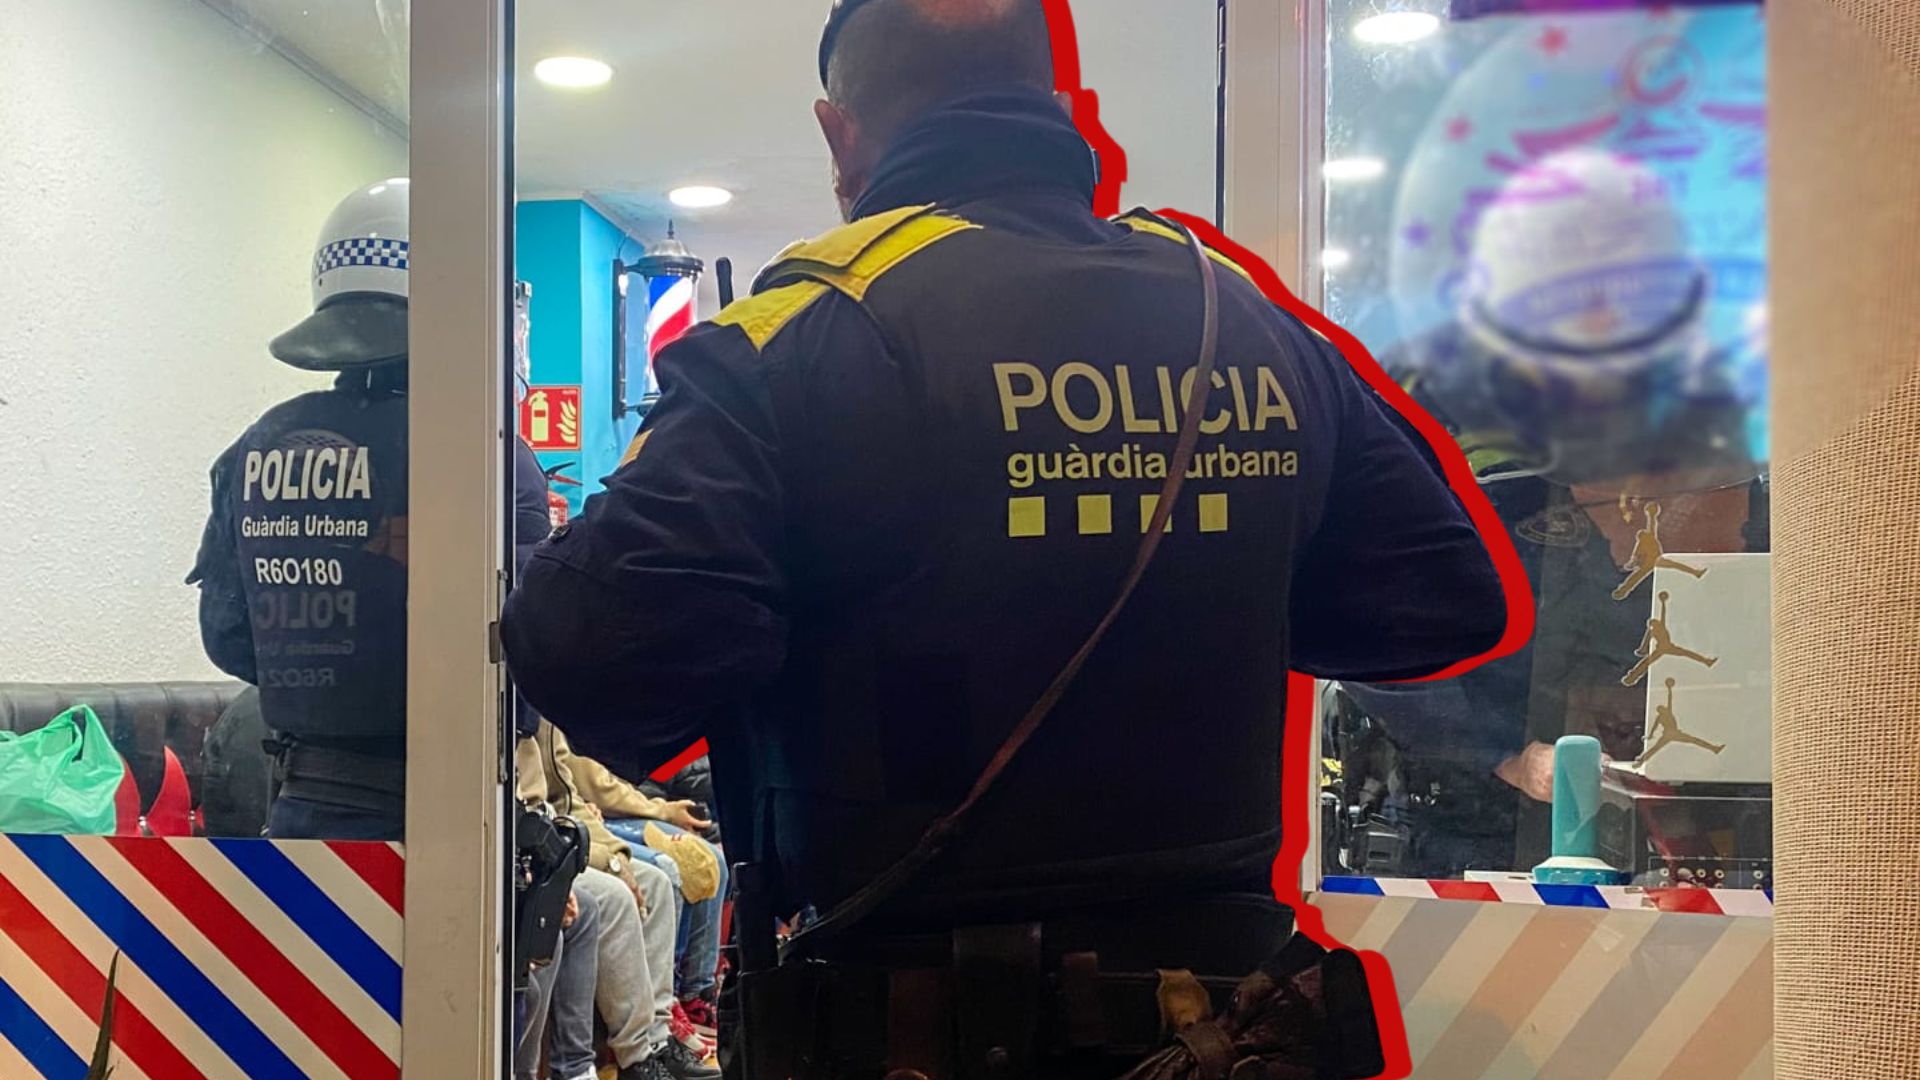 Police arrest Chaca, leader of 'narcopisos' drug business in Barcelona's El Raval